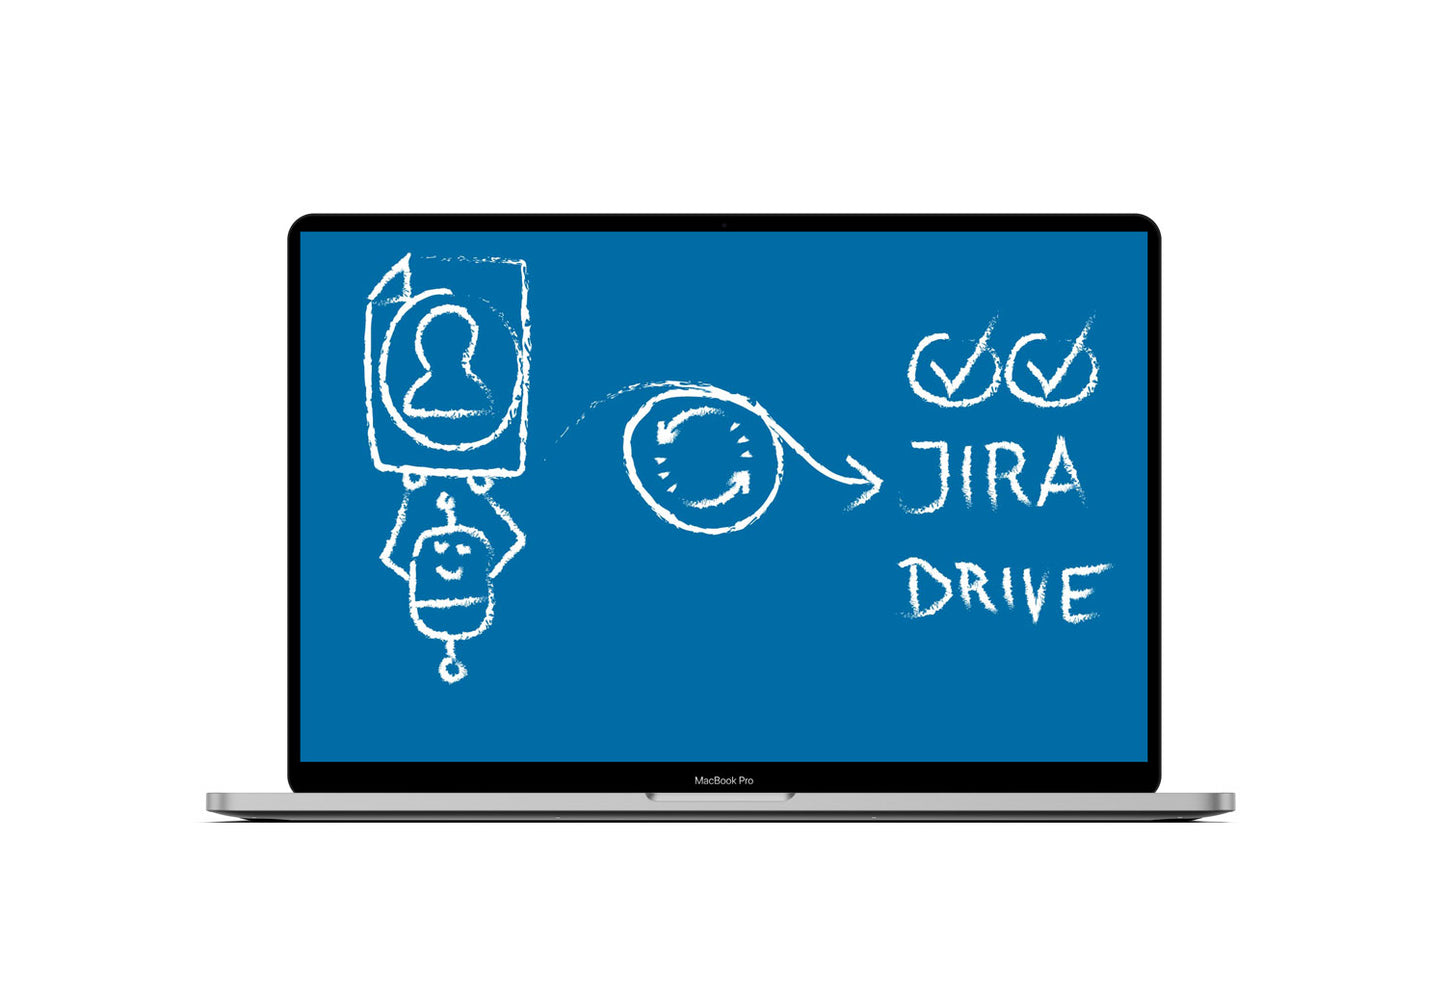 RPA: Auji (Automatische Jira-Ticket Erstellung und Ablage eines Bewerbers)